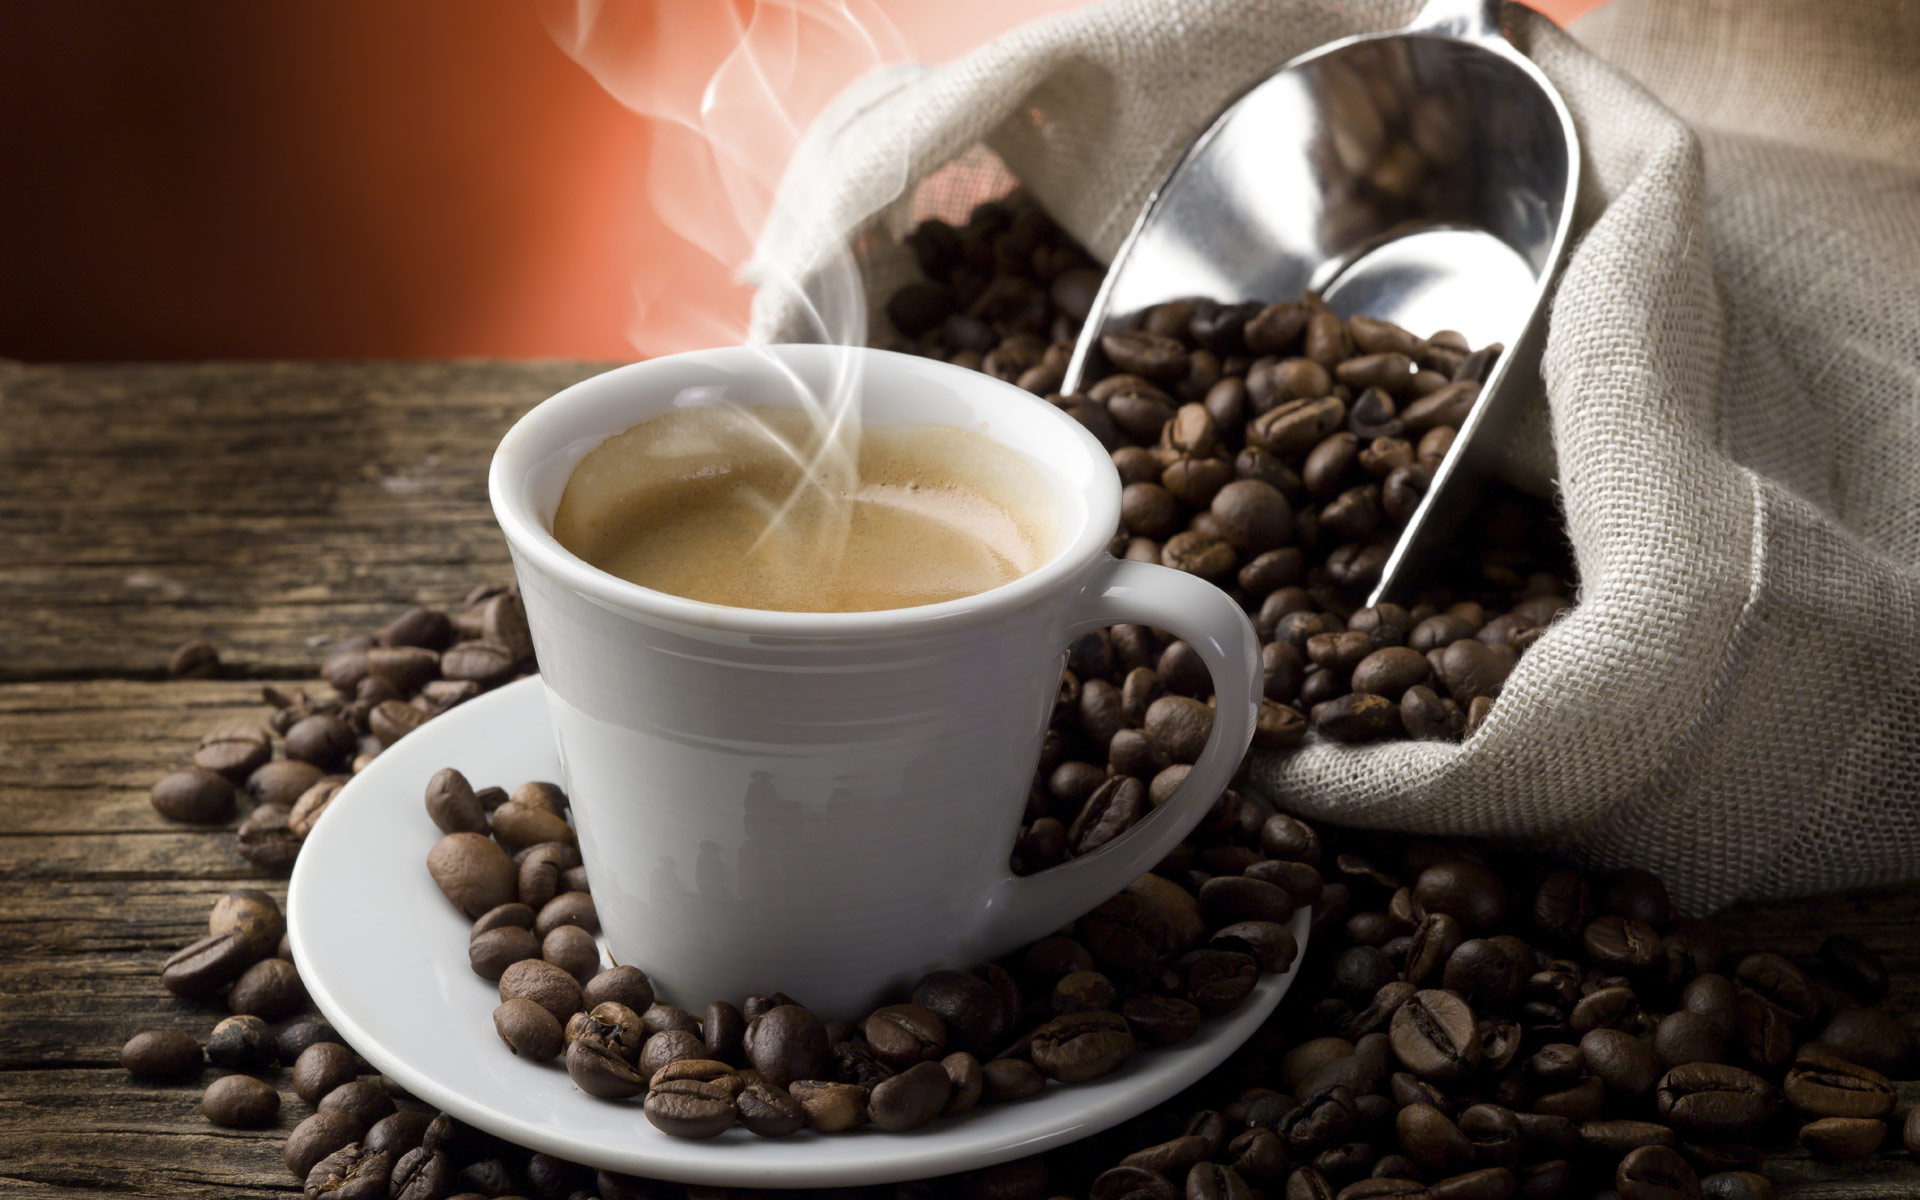 Αλλεργία στην καφεΐνη: Συμπτώματα, αιτίες και αντιμετώπιση